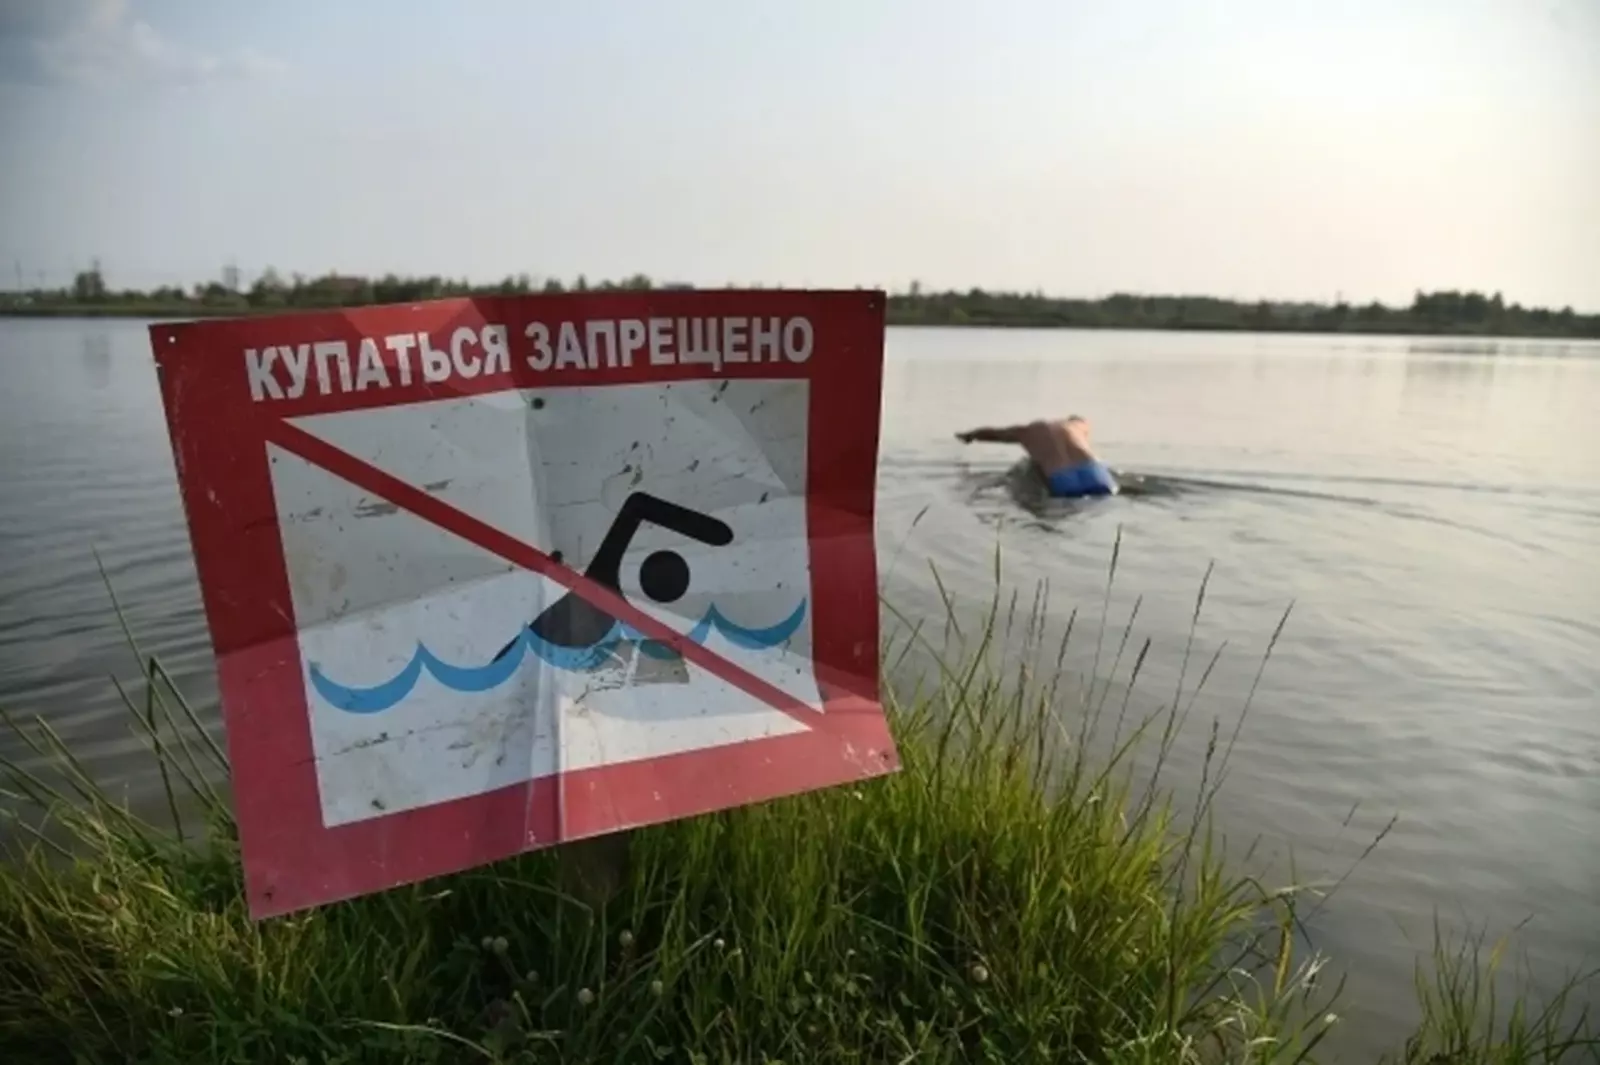 Купаться нельзя река. Купаться запрещено. Запрещено купаться в водоемах. Купание запрещено табличка. Знаки запрещающие купание в водоемах.